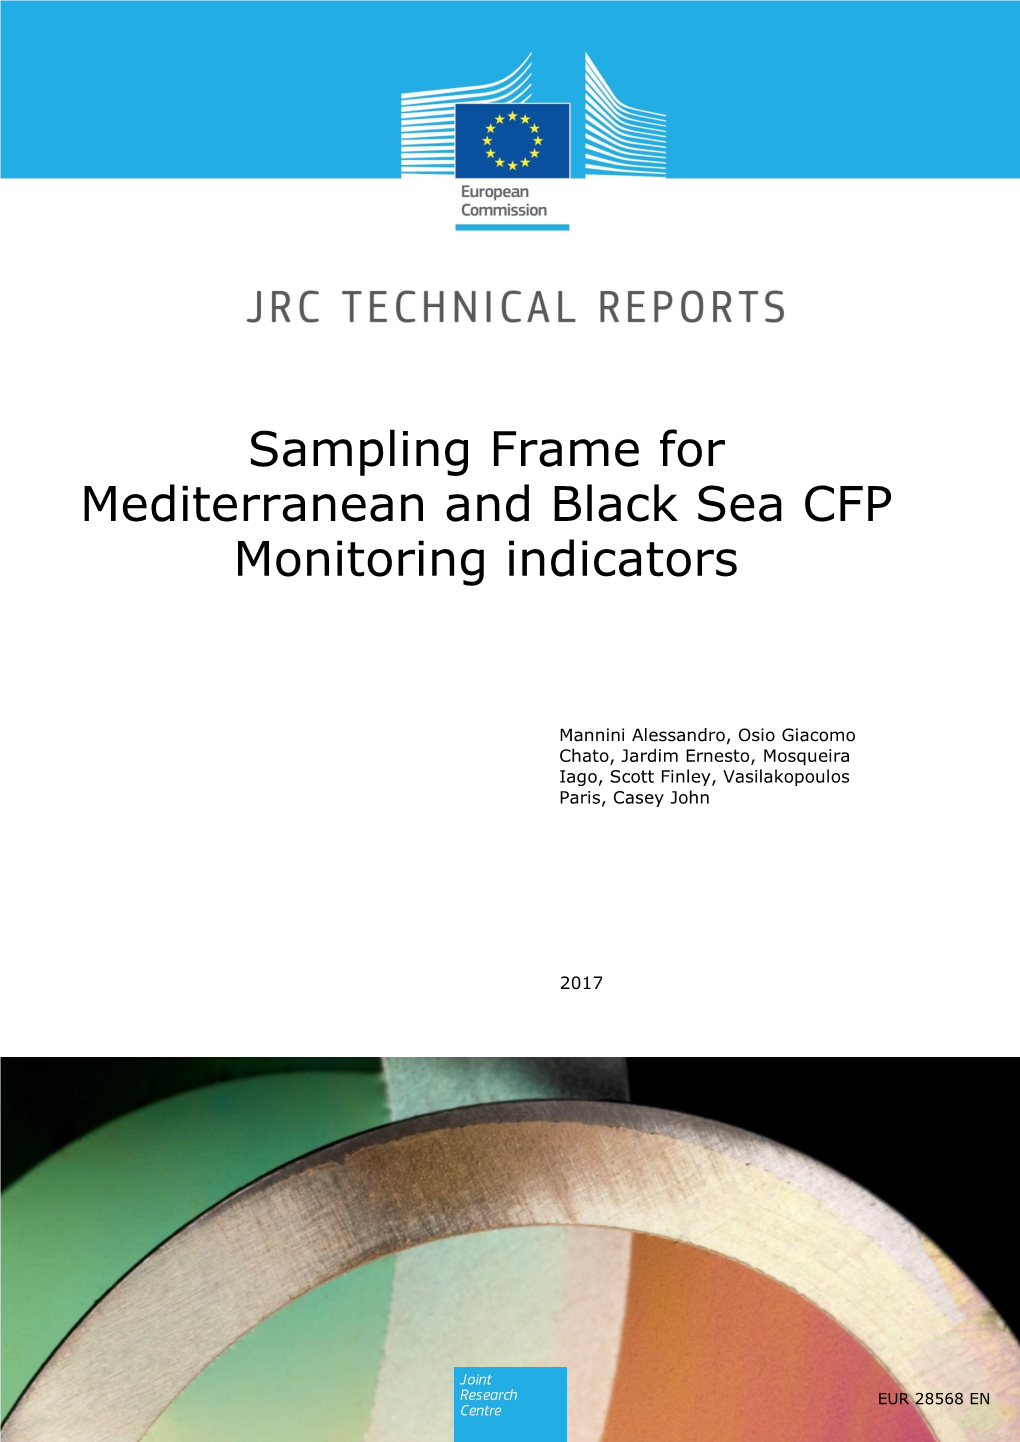 Sampling Frame for Mediterranean and Black Sea CFP Monitoring Indicators